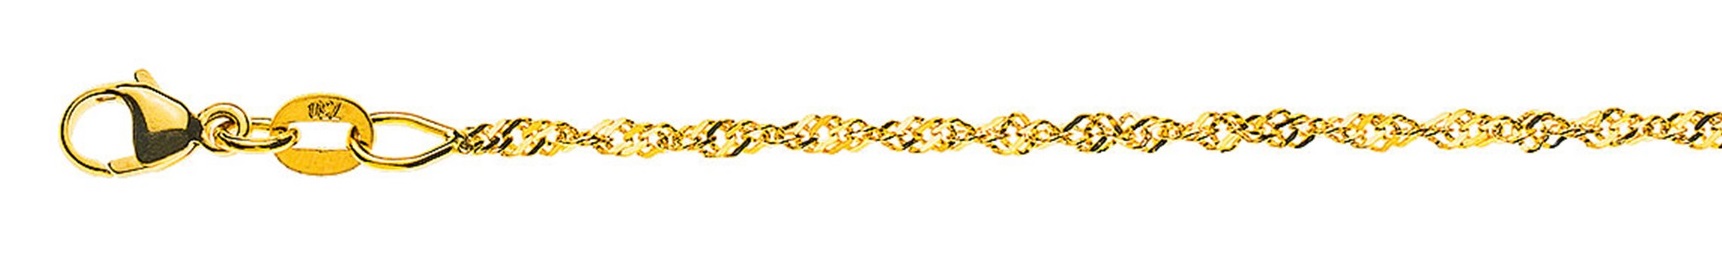 AURONOS Prestige Necklace Yellow Gold 18K Singapore Chain 55cm 1.5mm